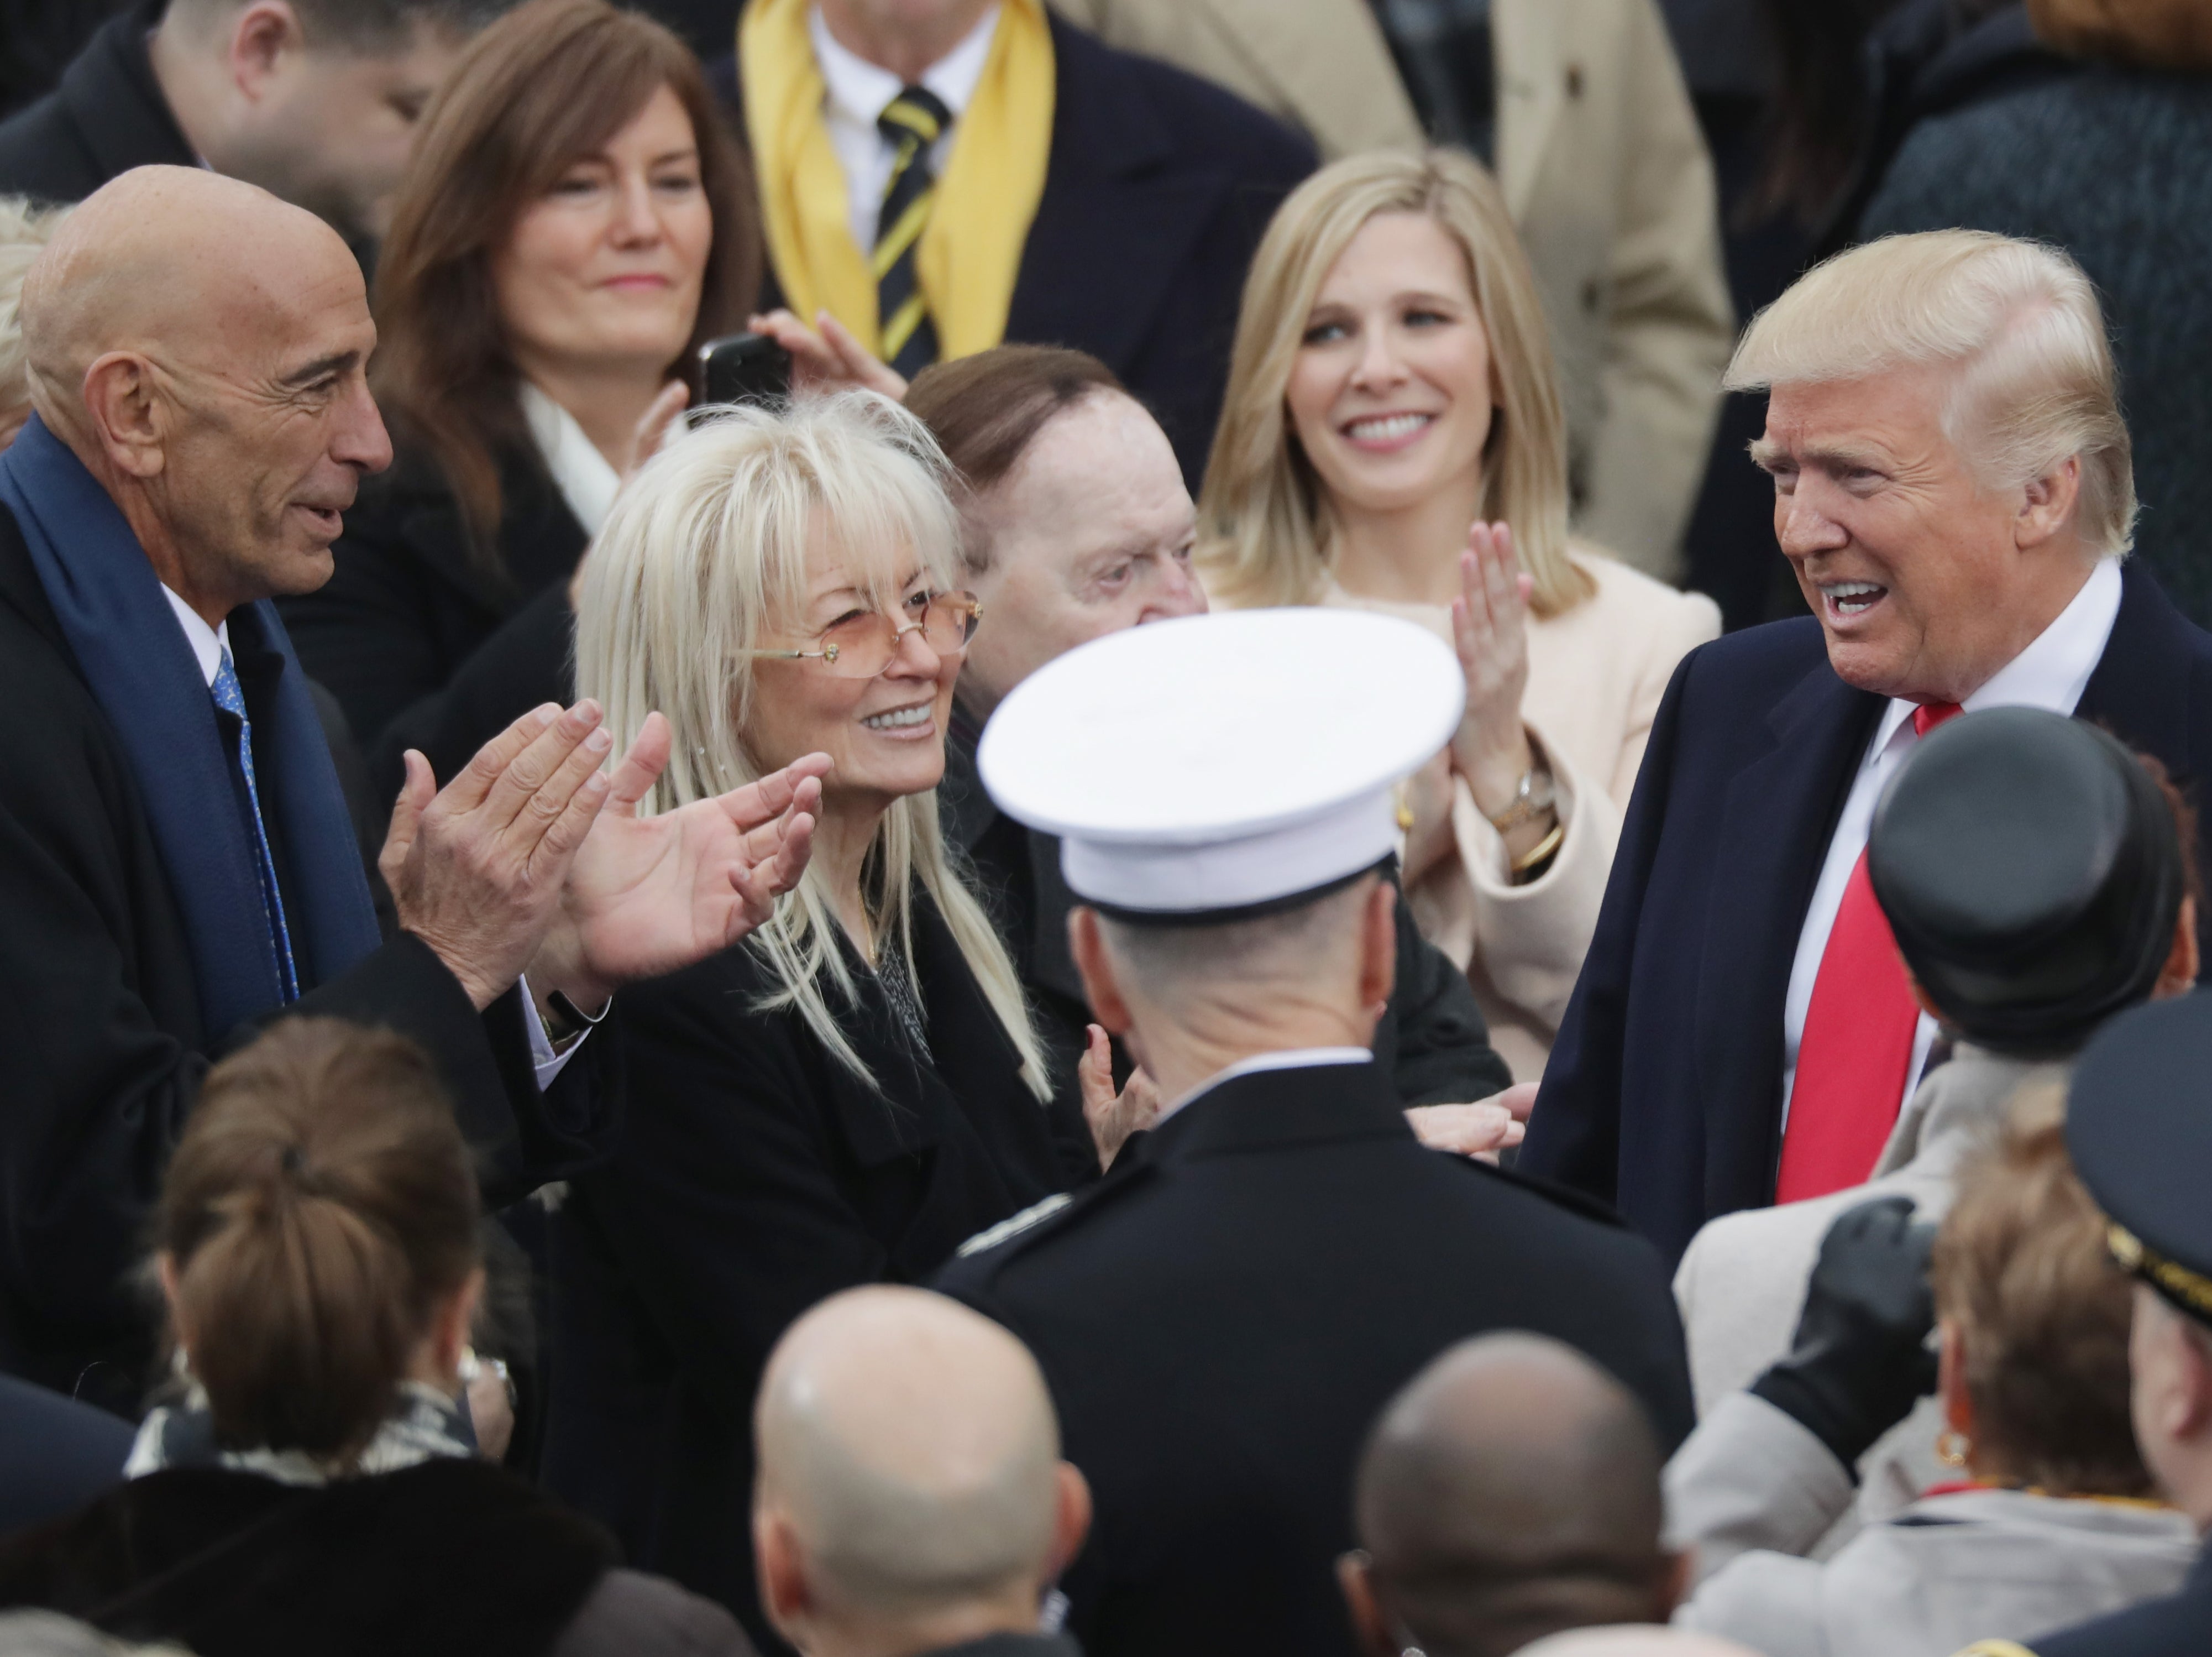 Thomas Barrack, a la izquierda, con Miriam y Sheldon Adelson, saludan a Donald Trump frente al Capitolio de los Estados Unidos el día de su toma de posesión como presidente, el 20 de enero de 2017.